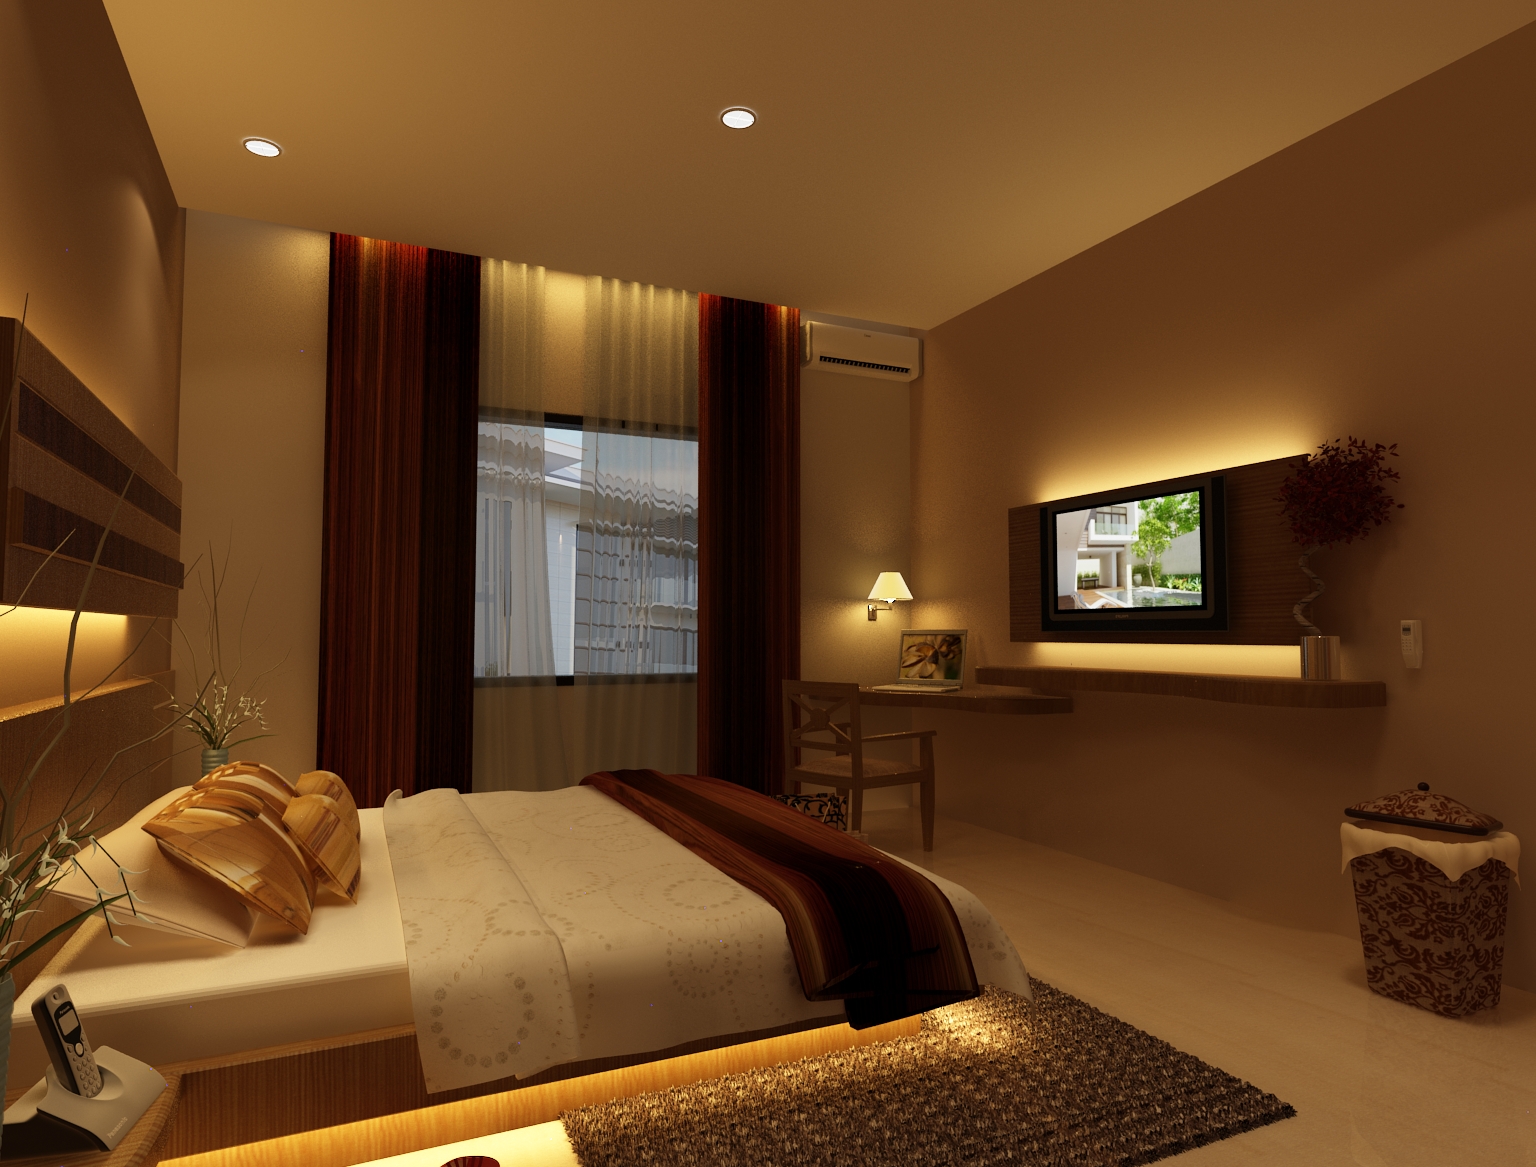 배경 카마르 tidur minimalis,침실,방,인테리어 디자인,가구,특성